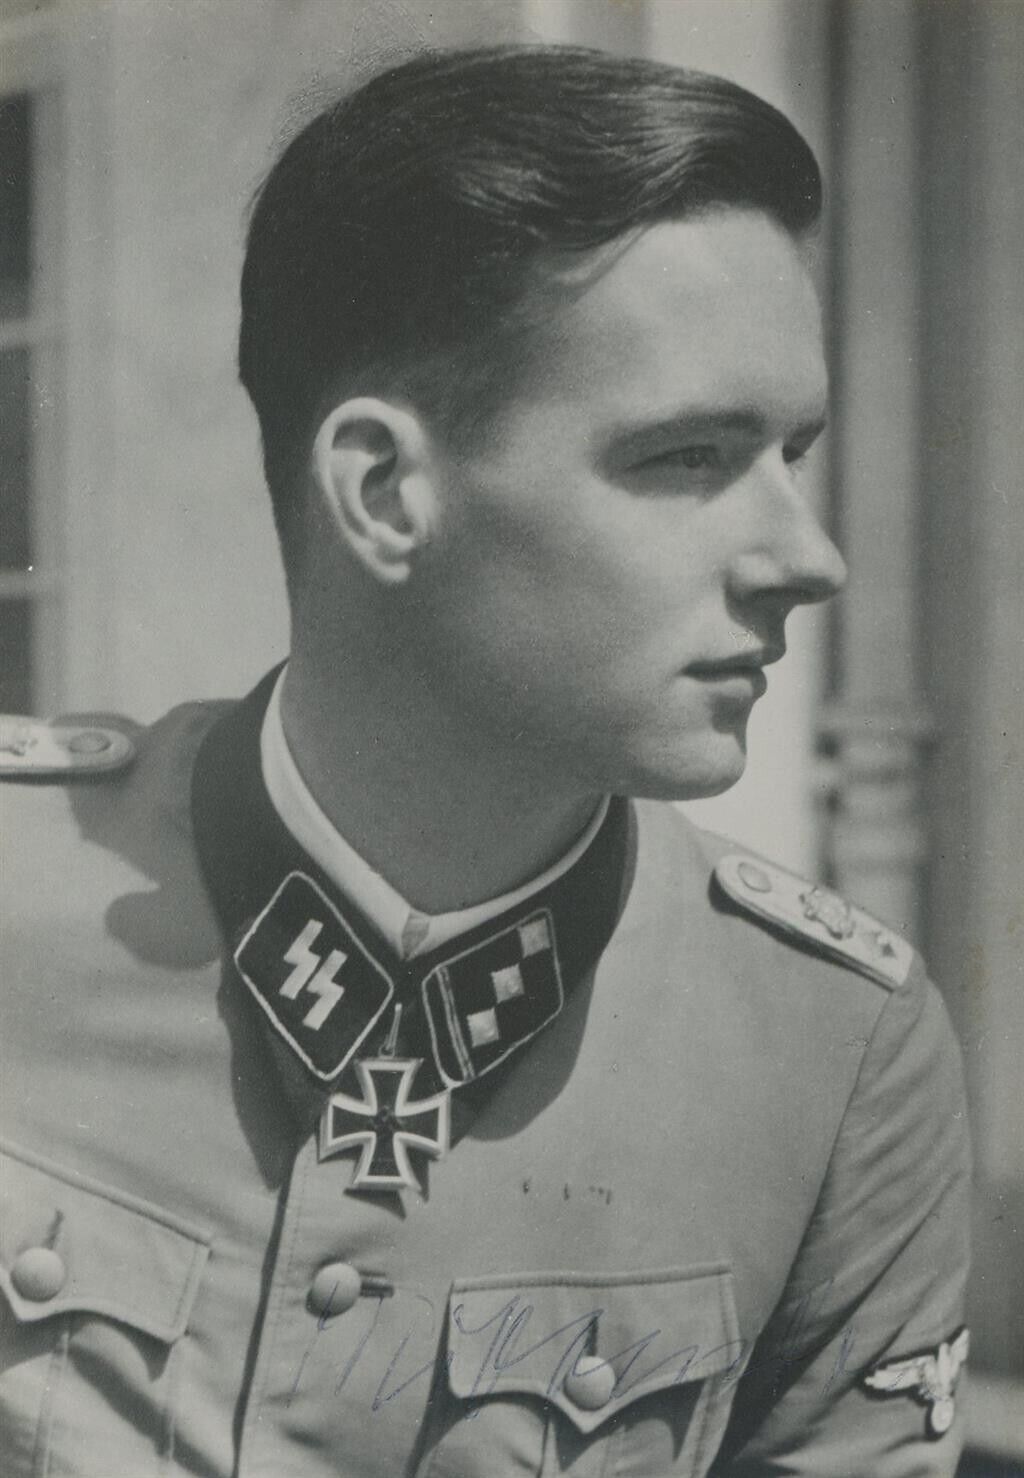 Rudolf von Ribbentrop- Signed Photograph (WWII German SS-Obersturmfuhrer)